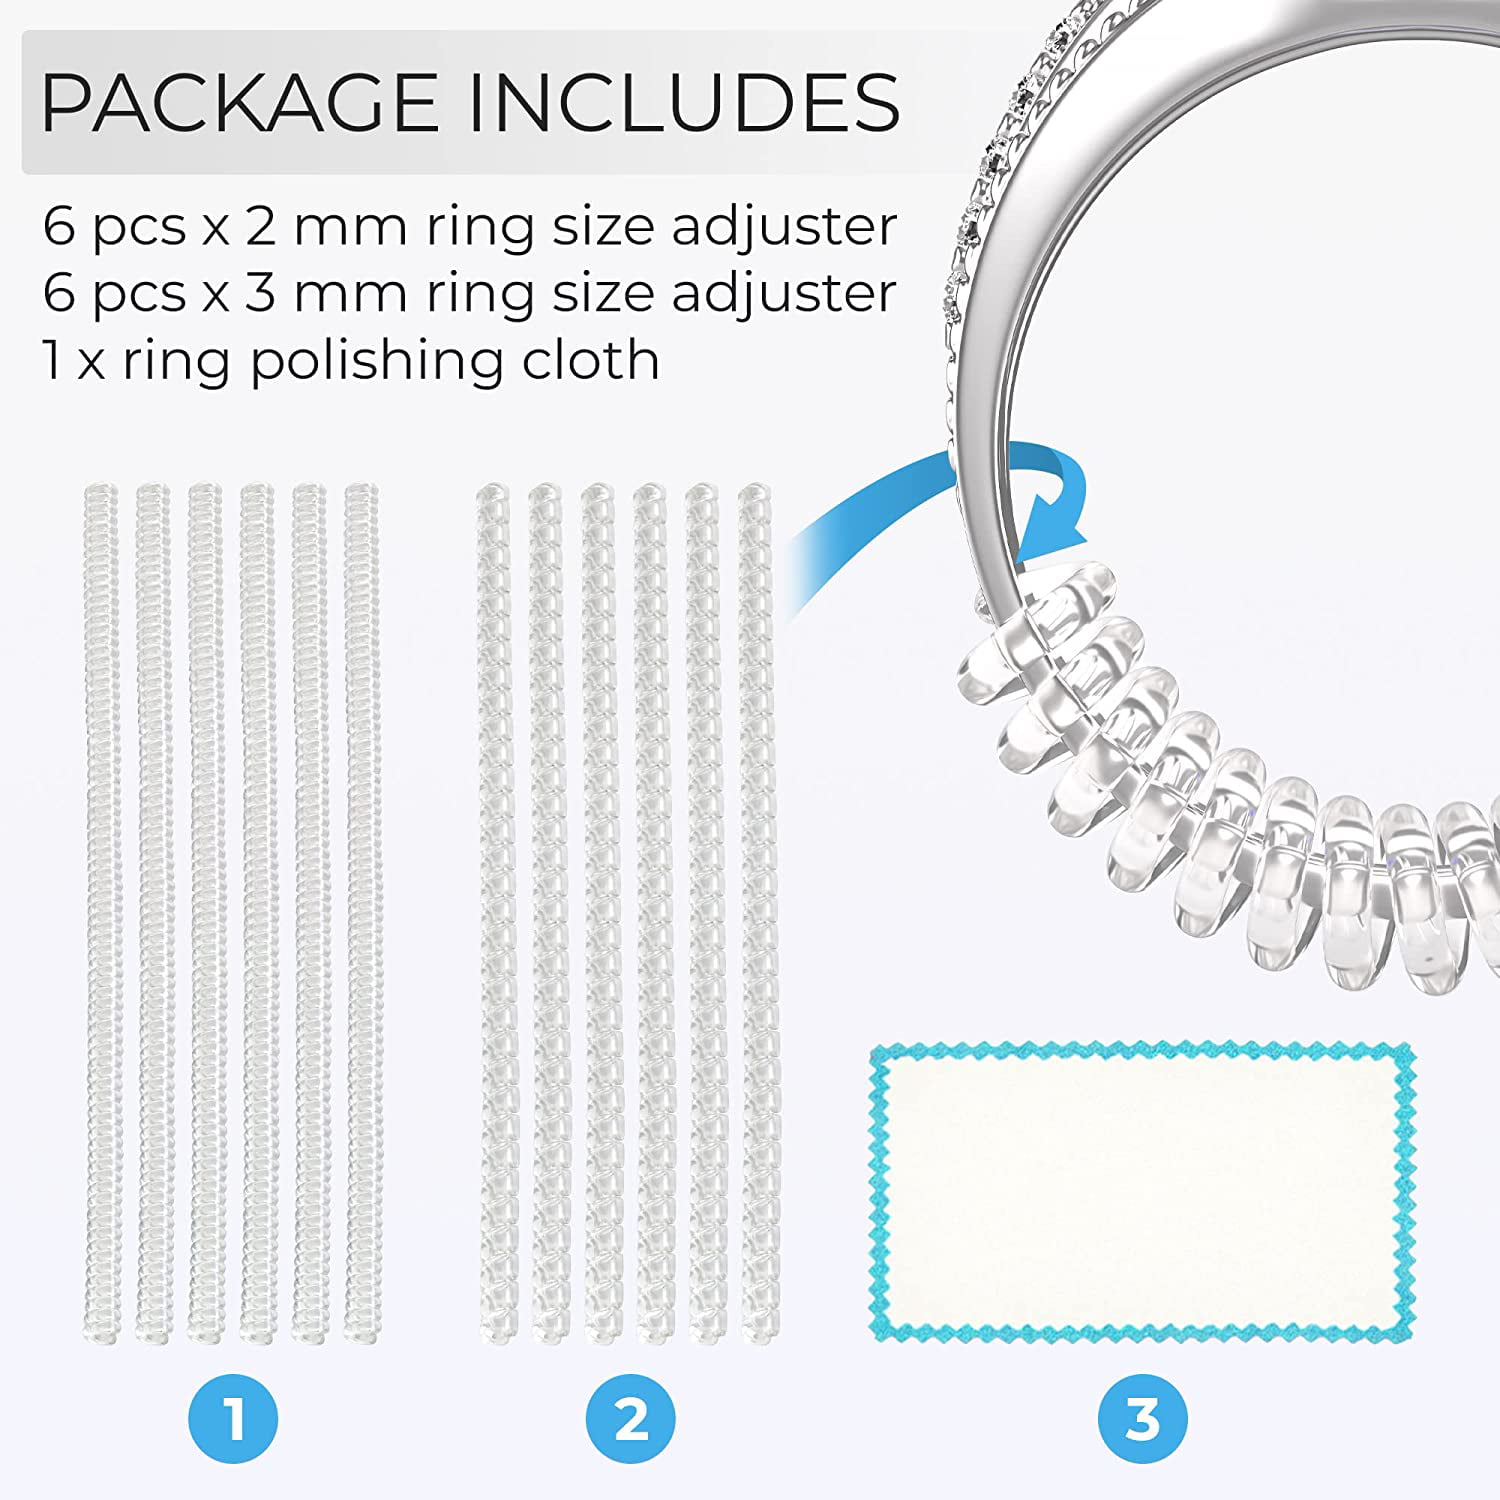 TAHEXUN Ring Size Adjuster for Loose Rings - 12-Pack Tightener Set